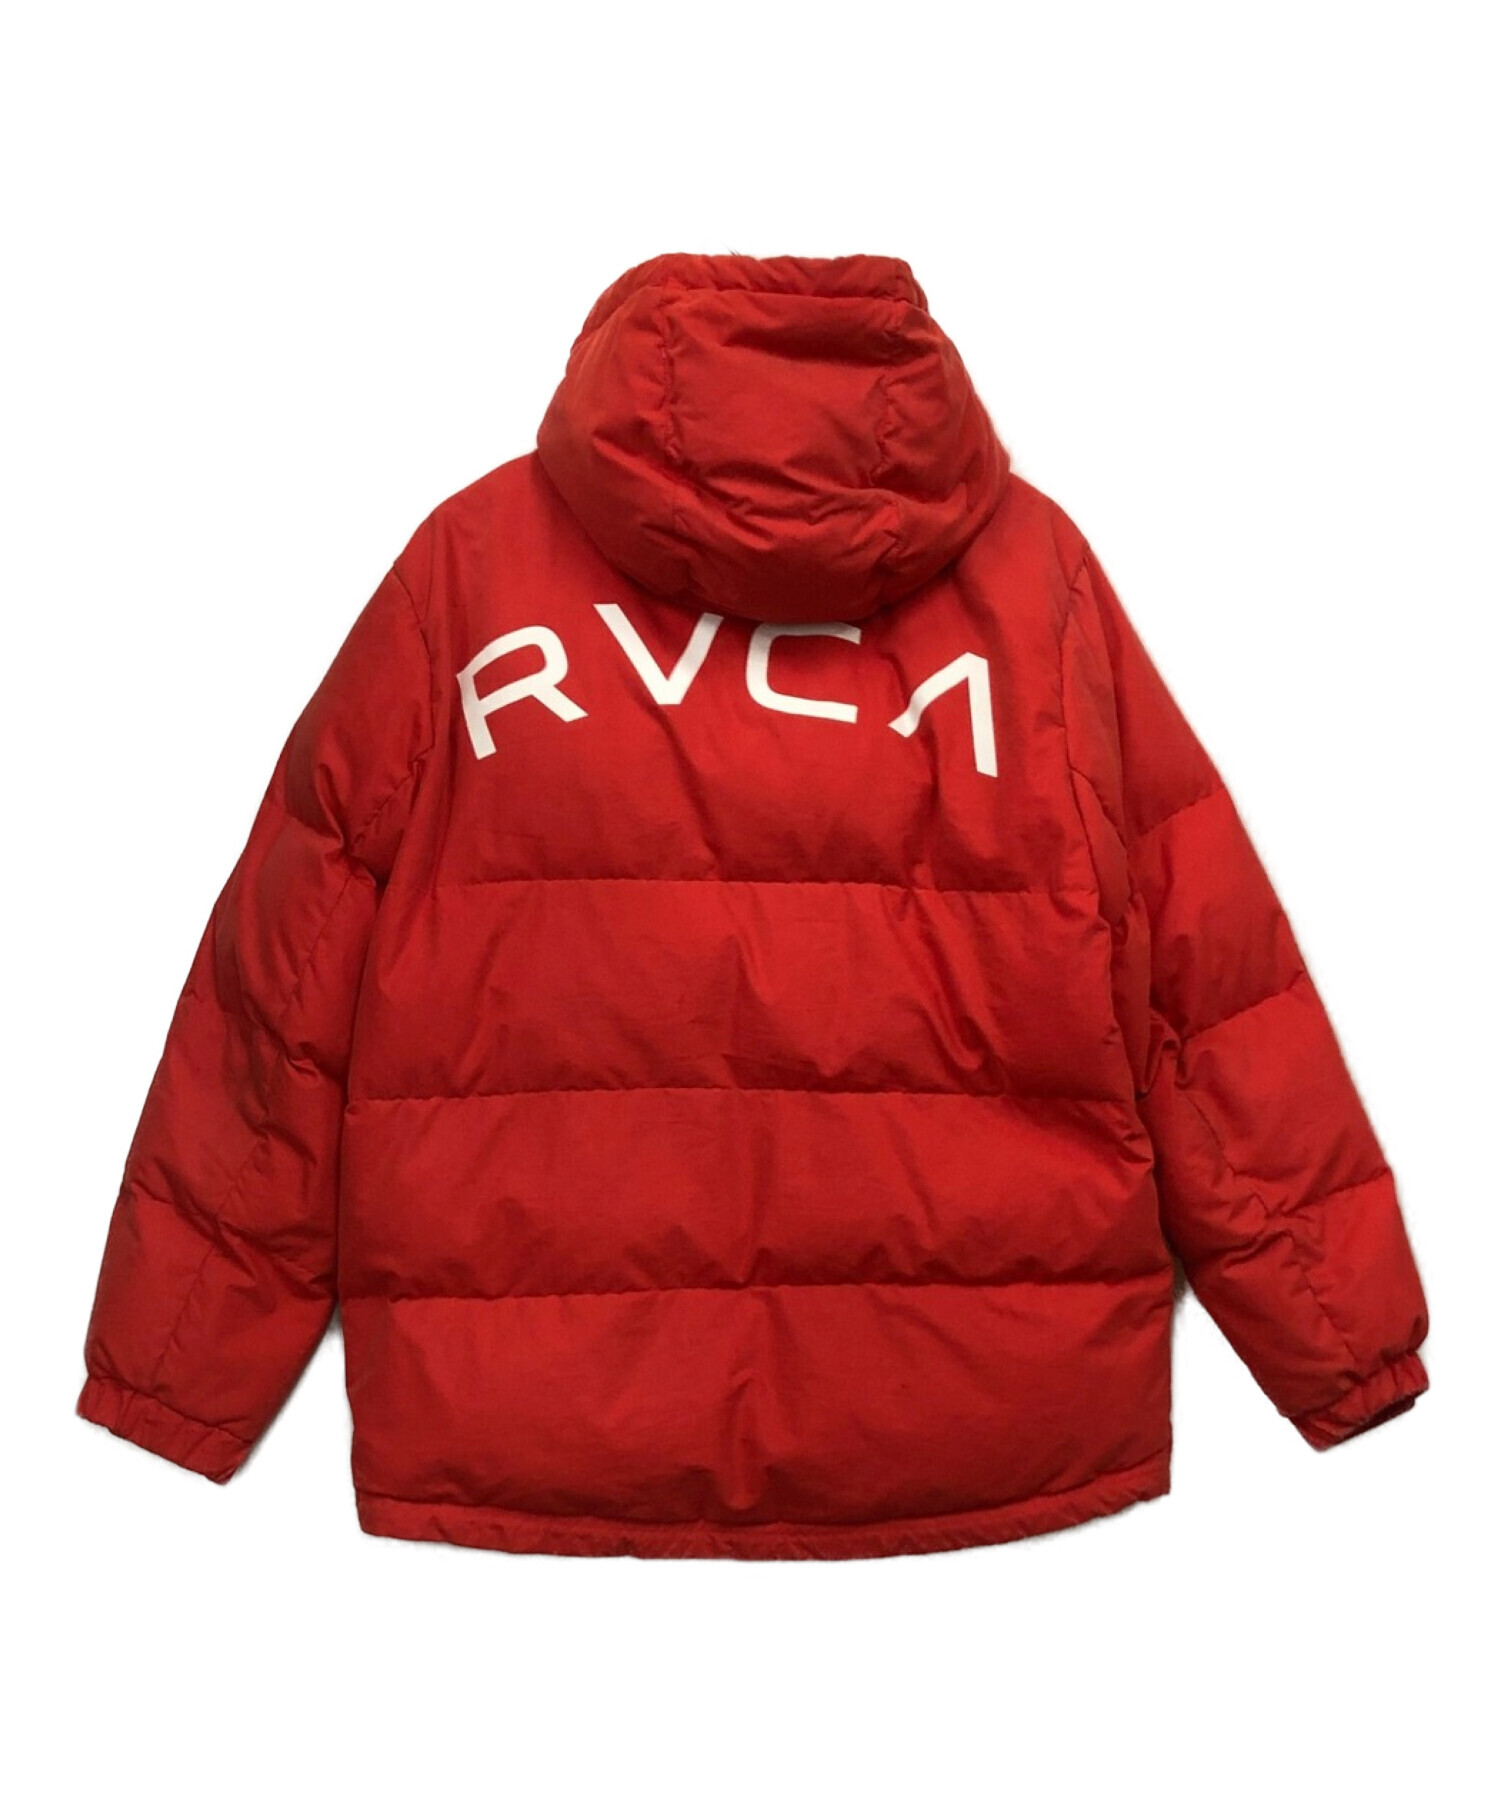 RVCA (ルーカ) 中綿ジャケット レッド サイズ:S